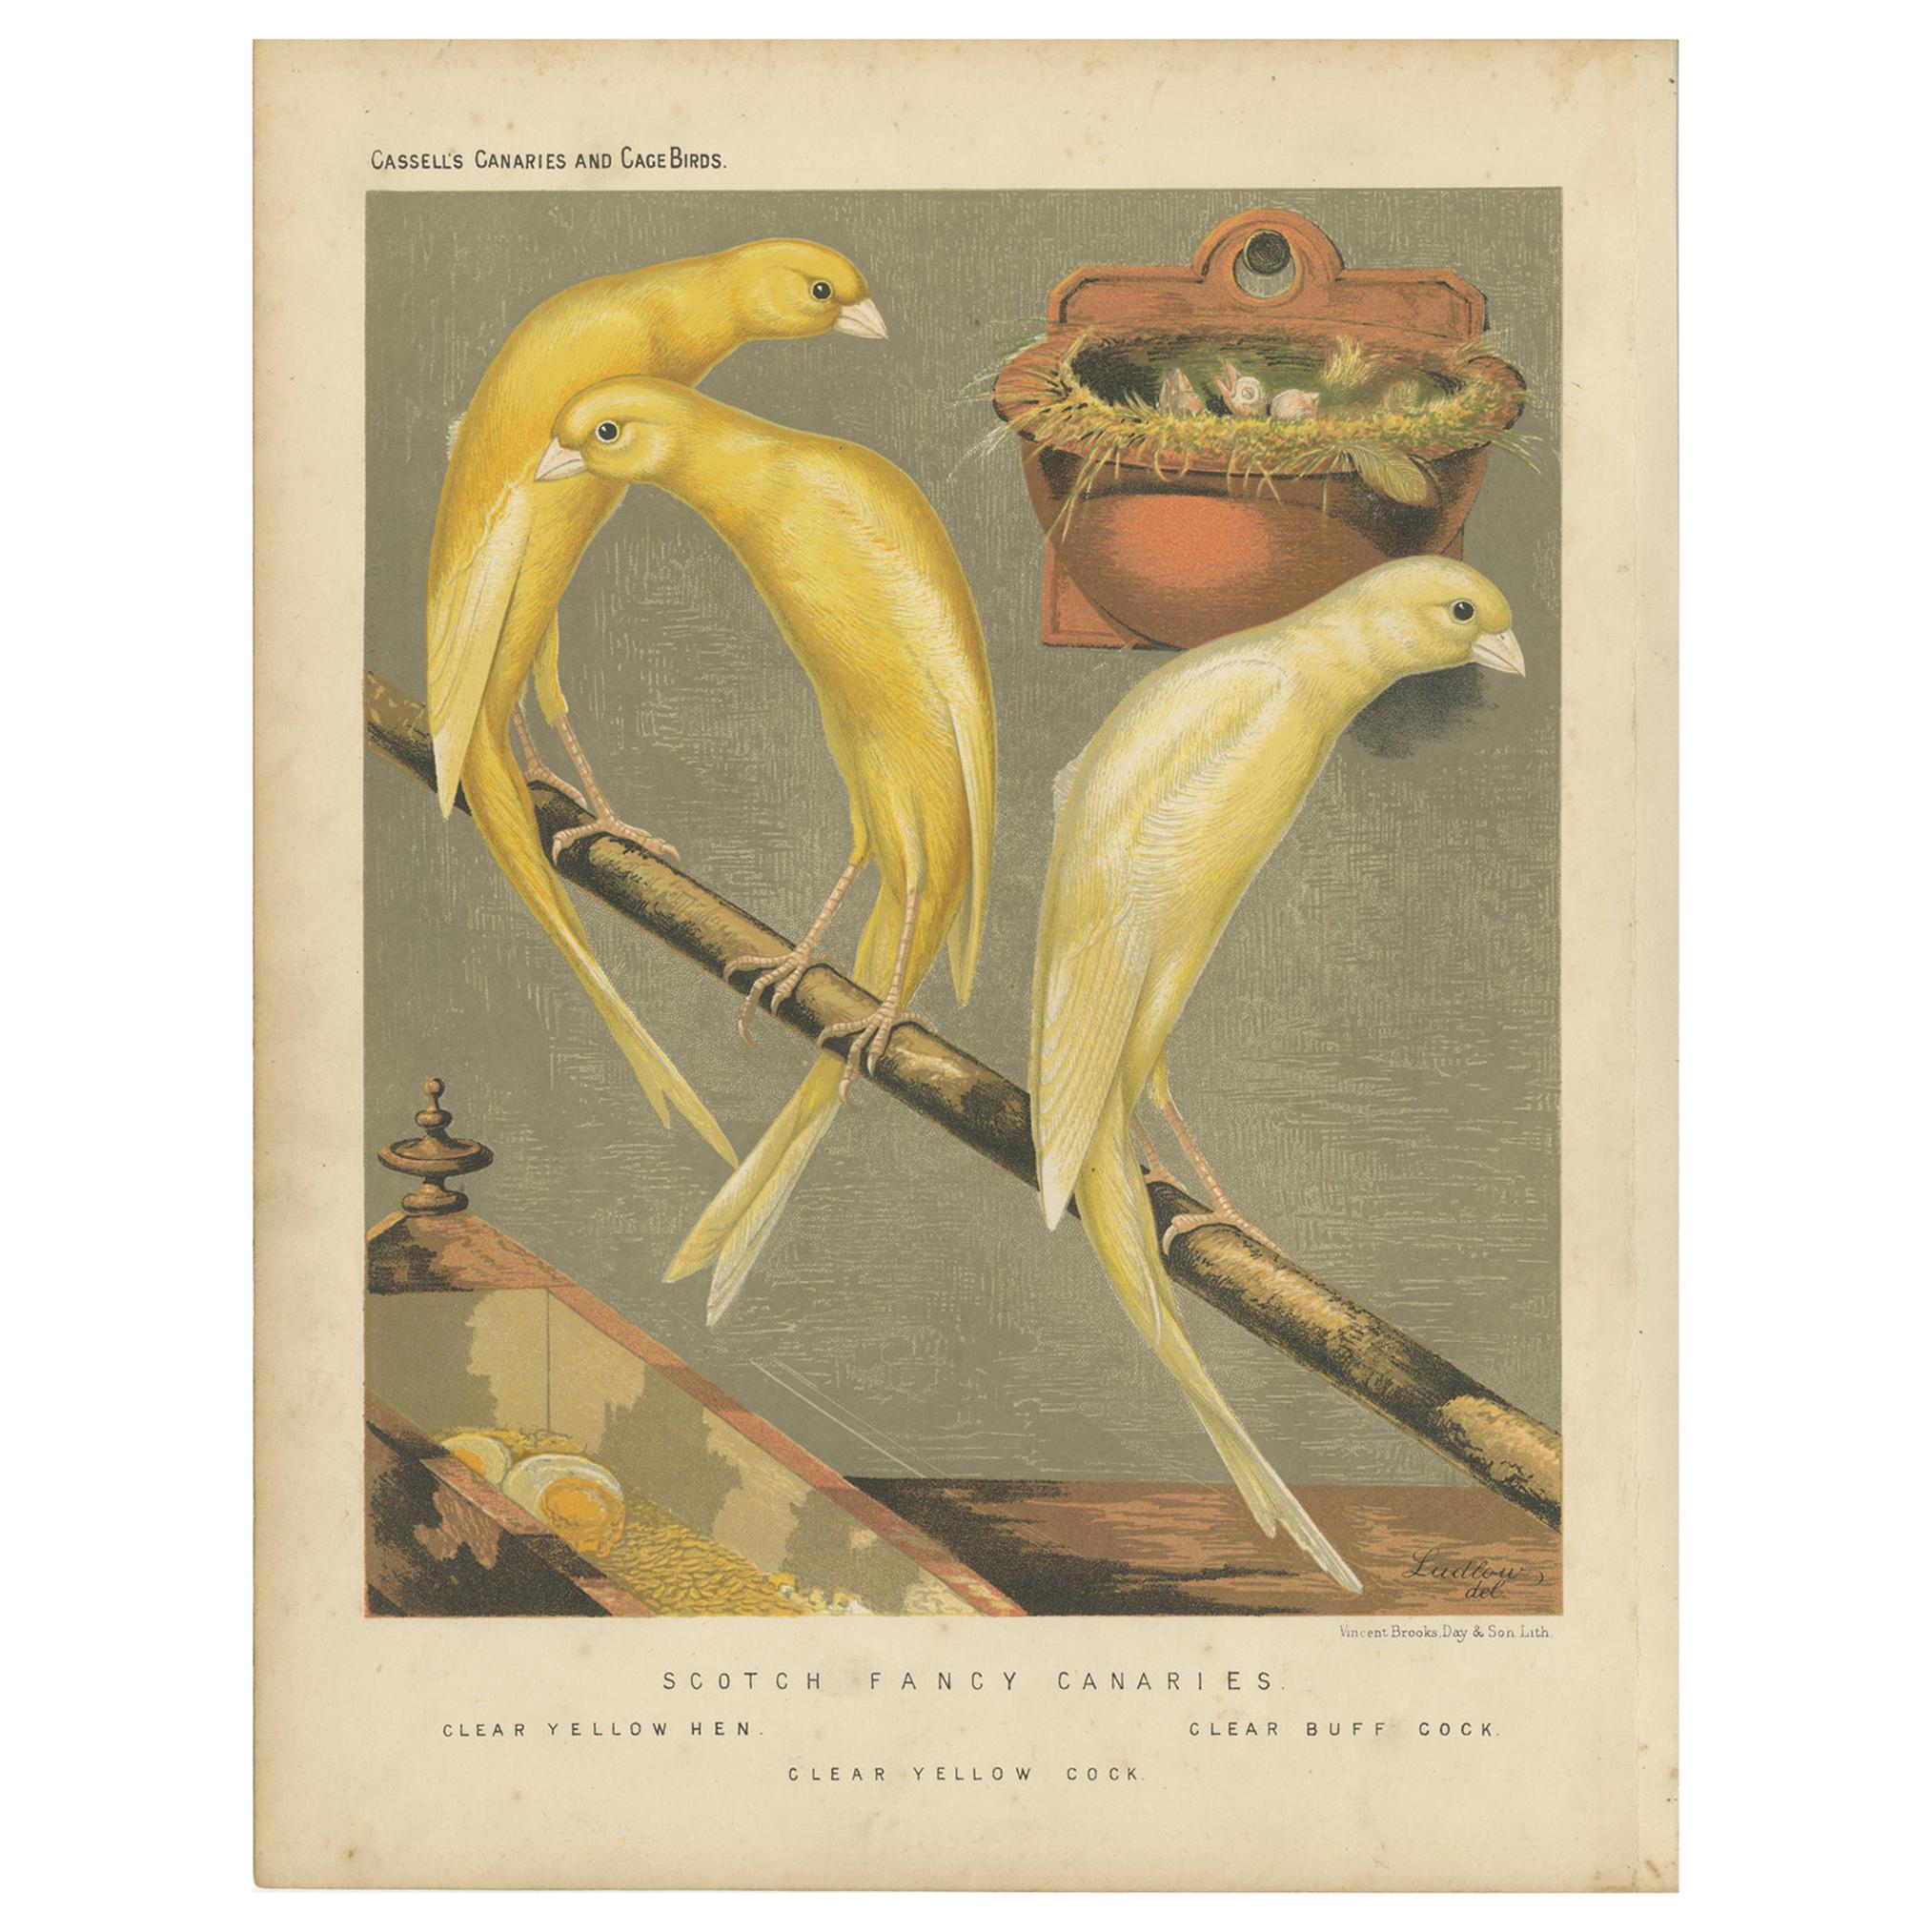 Antiker antiker Vogeldruck der schottischen Fancy Canaries, klargelbe Hen und andere